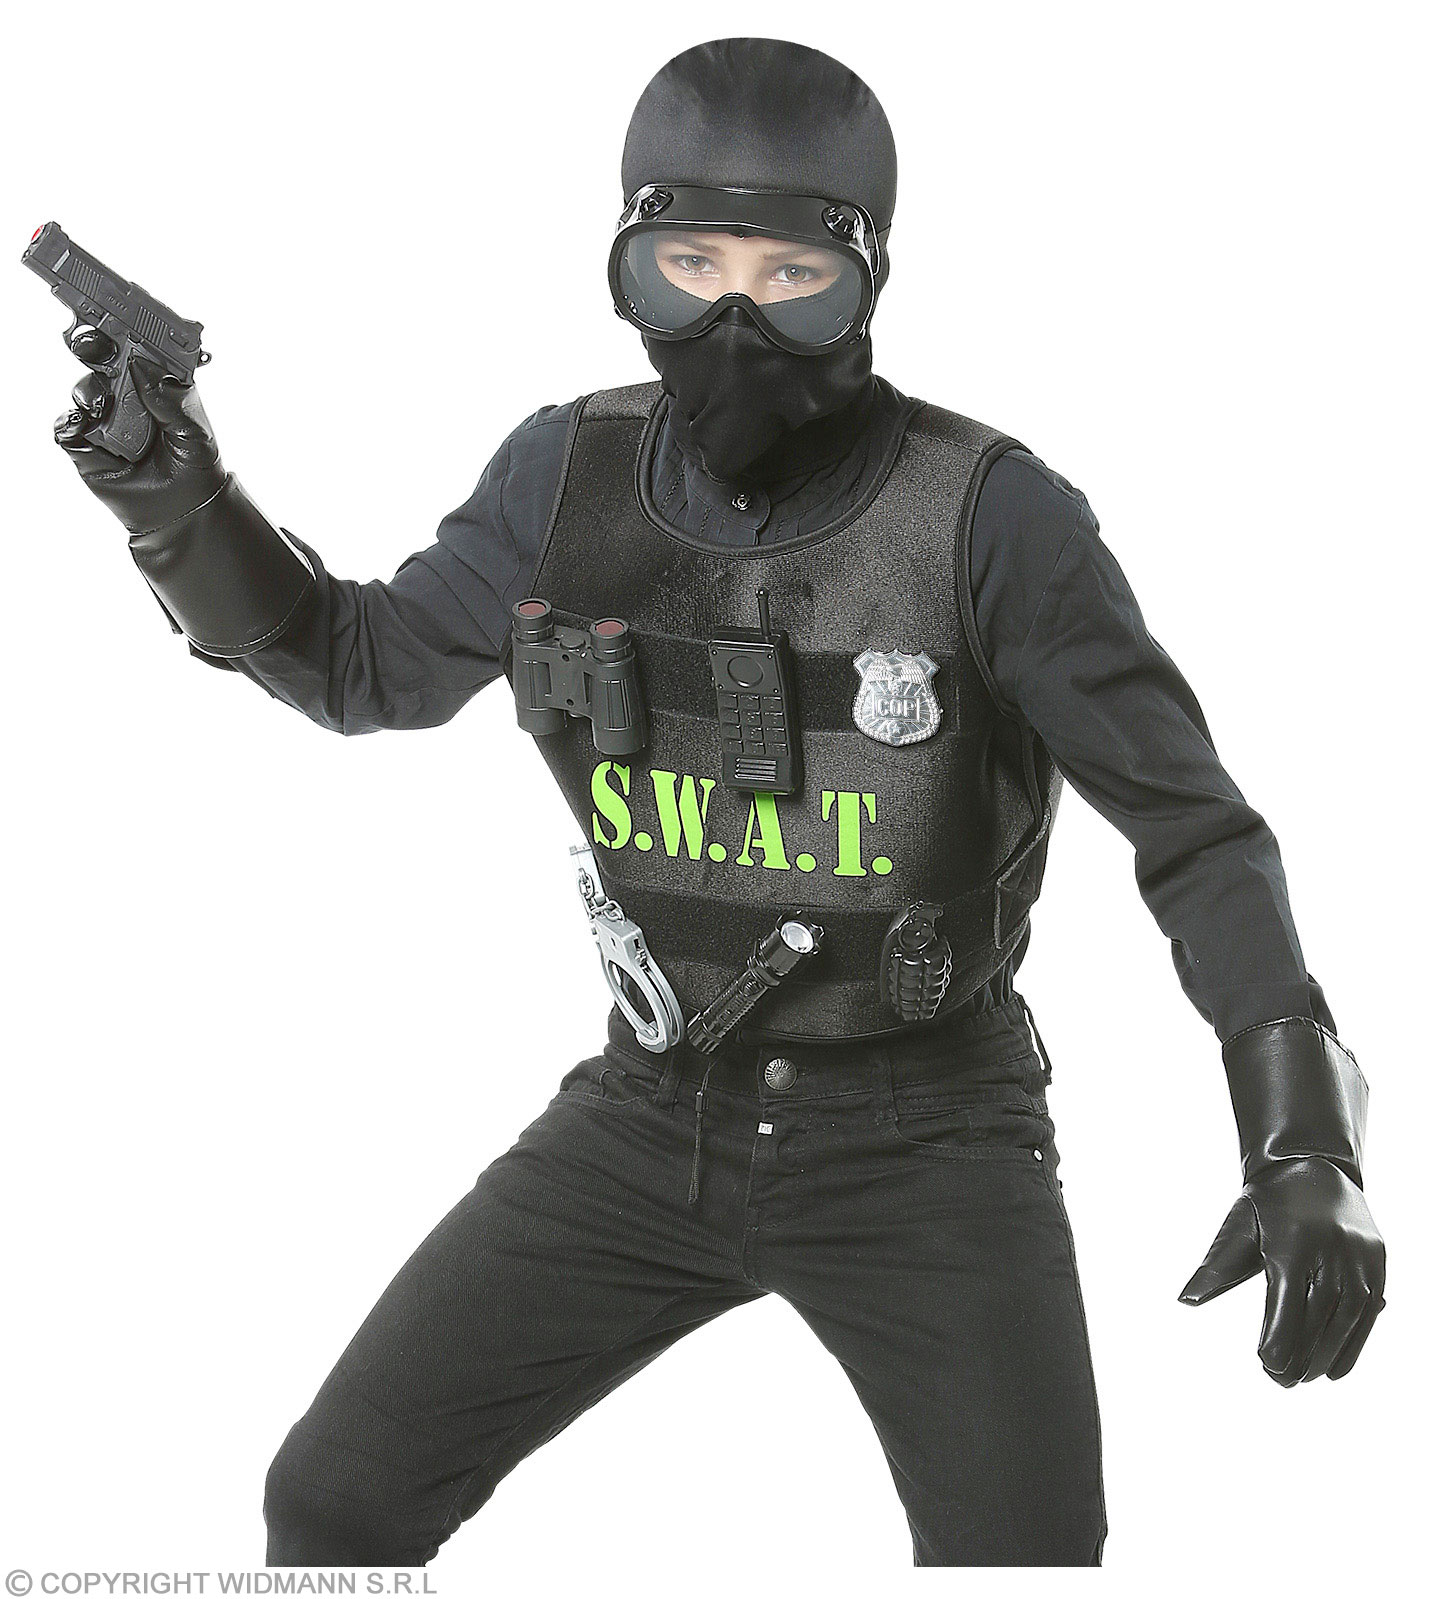 Déguisement SWAT homme